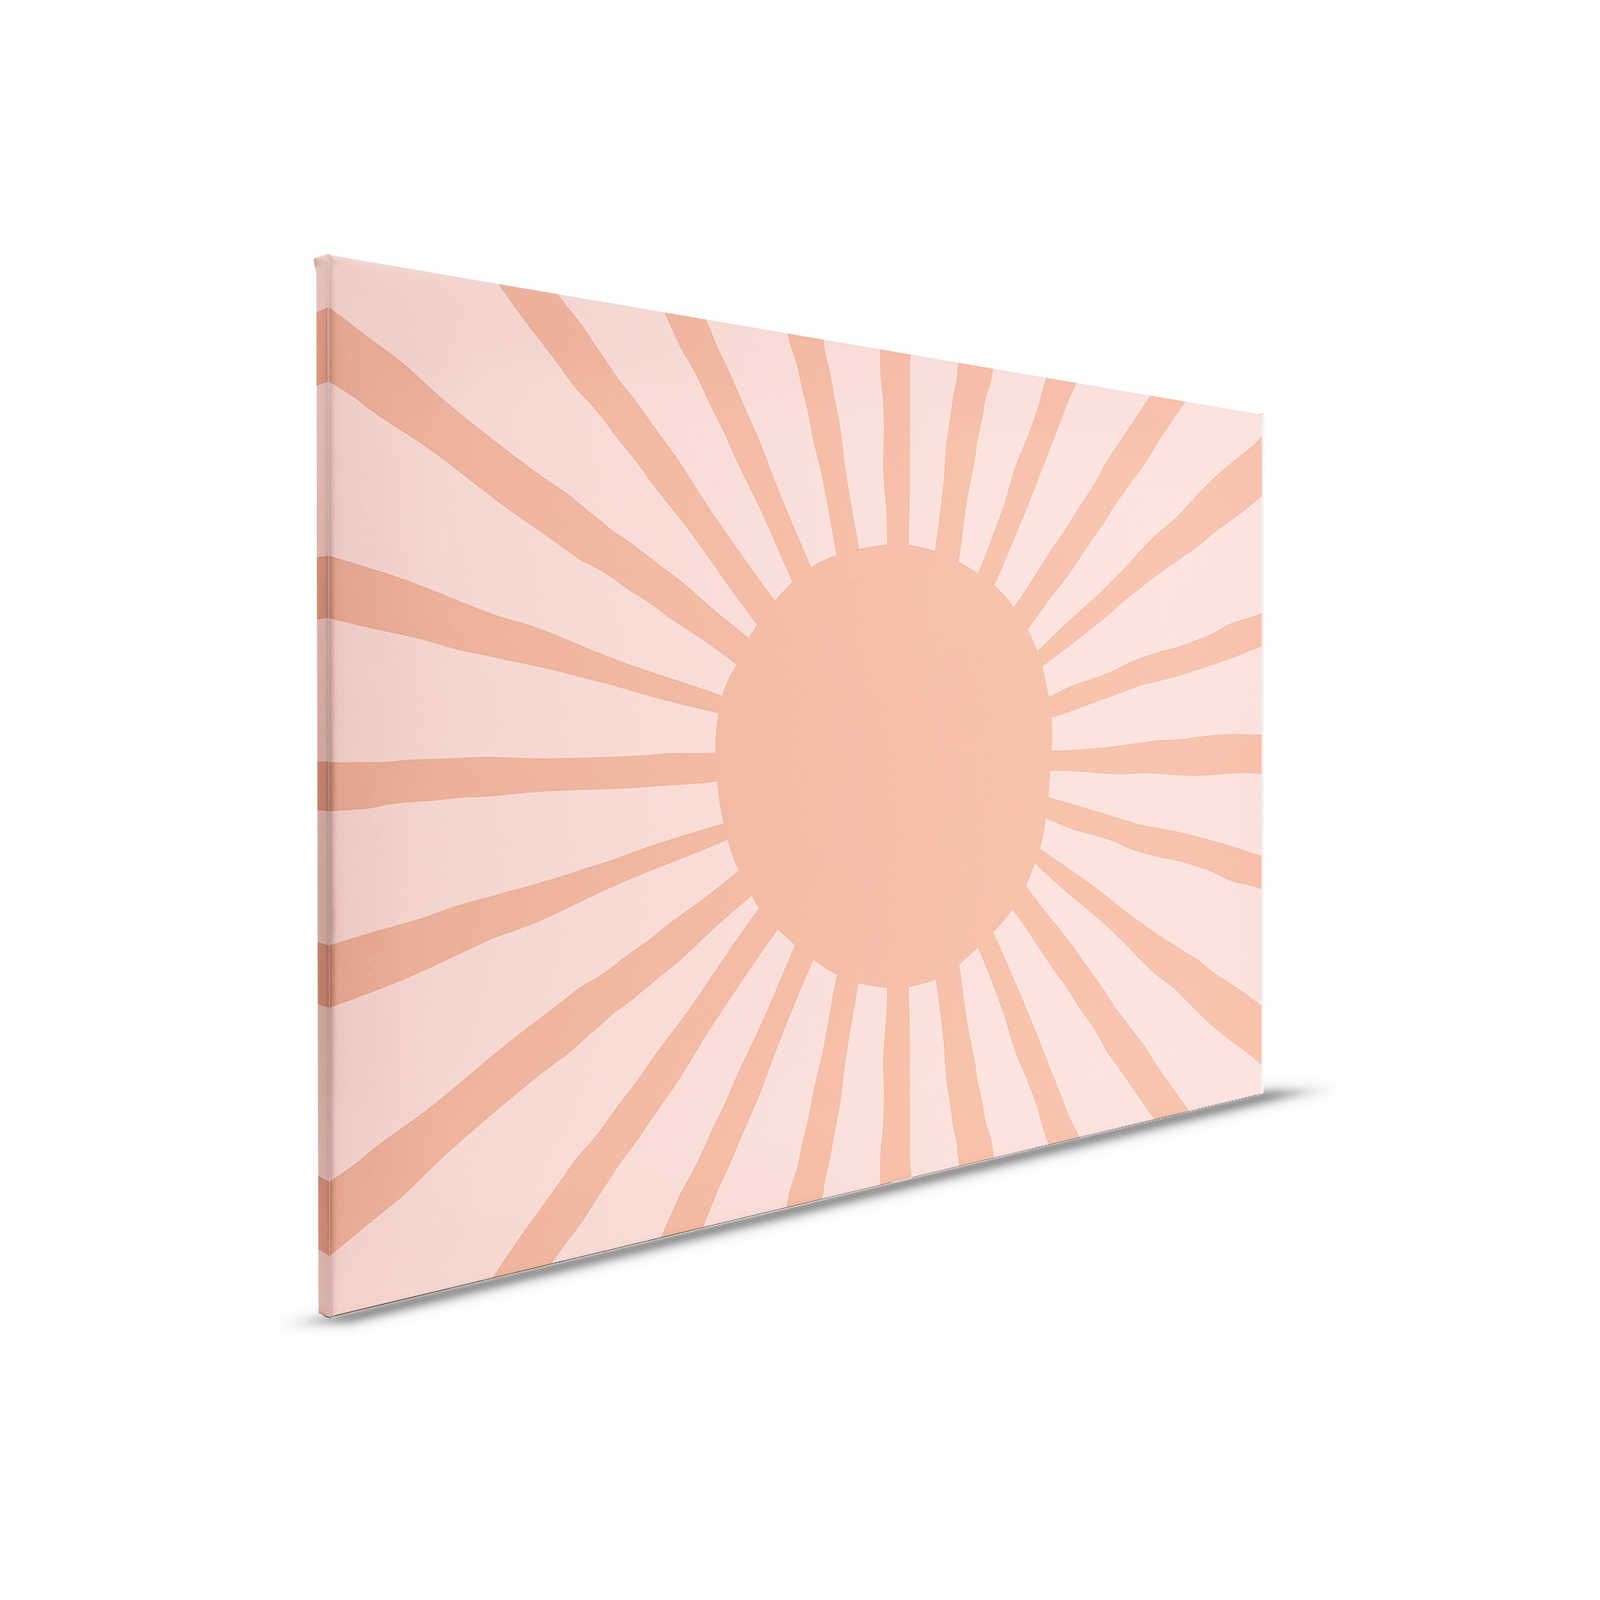         Leinwand abstrakte Sonne im gemalten Stil – 90 cm x 60 cm
    